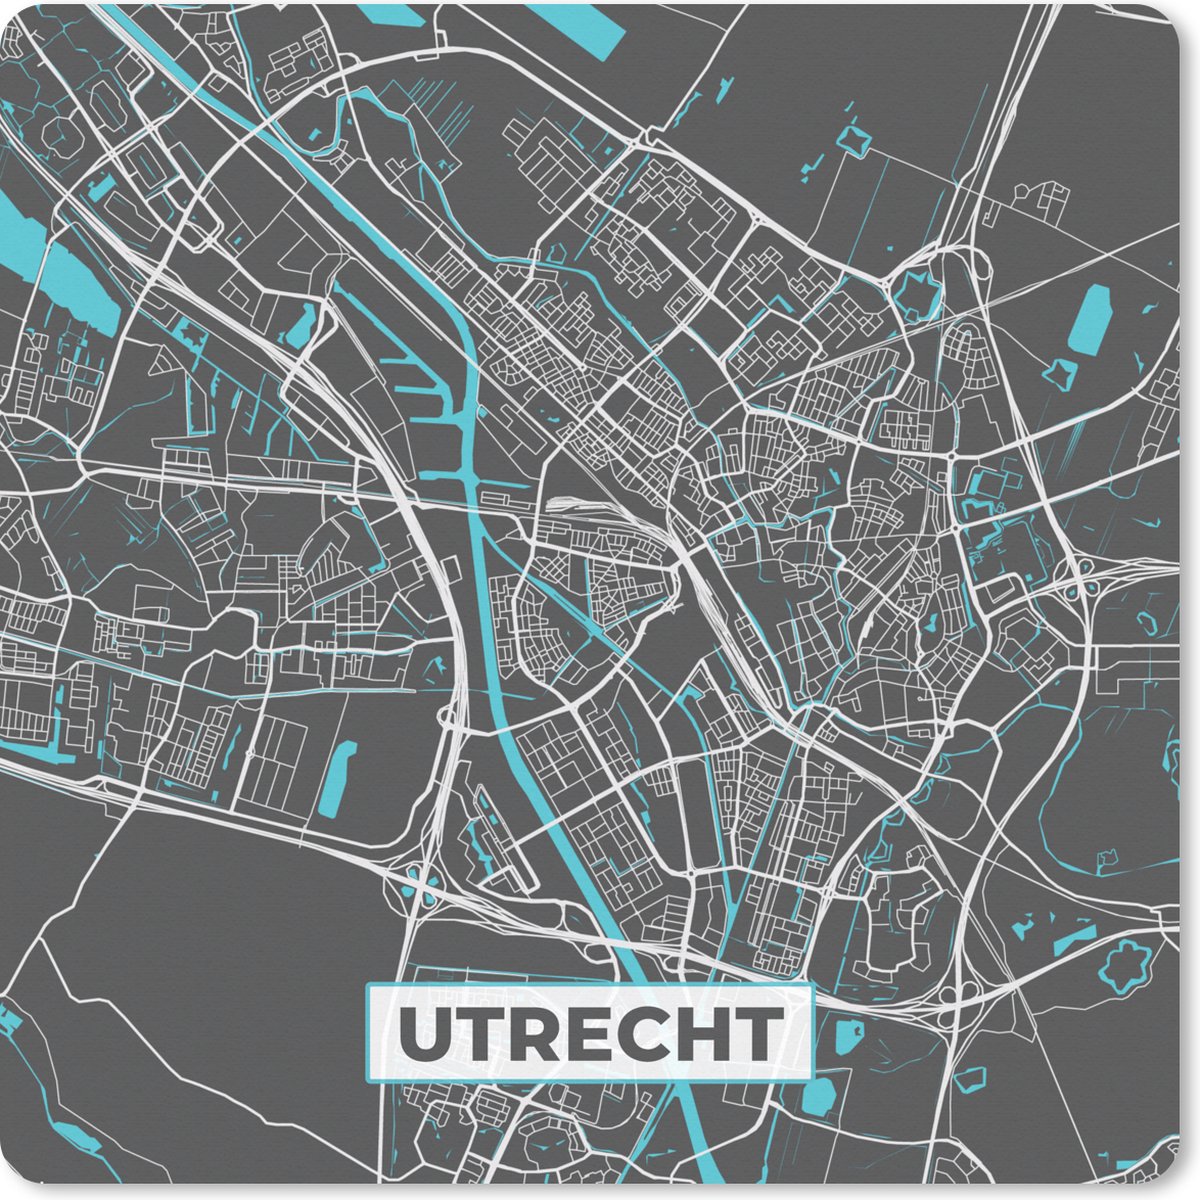 Muismat XXL - Bureau onderlegger - Bureau mat - Plattegrond - Utrecht - Grijs - Blauw - 60x60 cm - XXL muismat